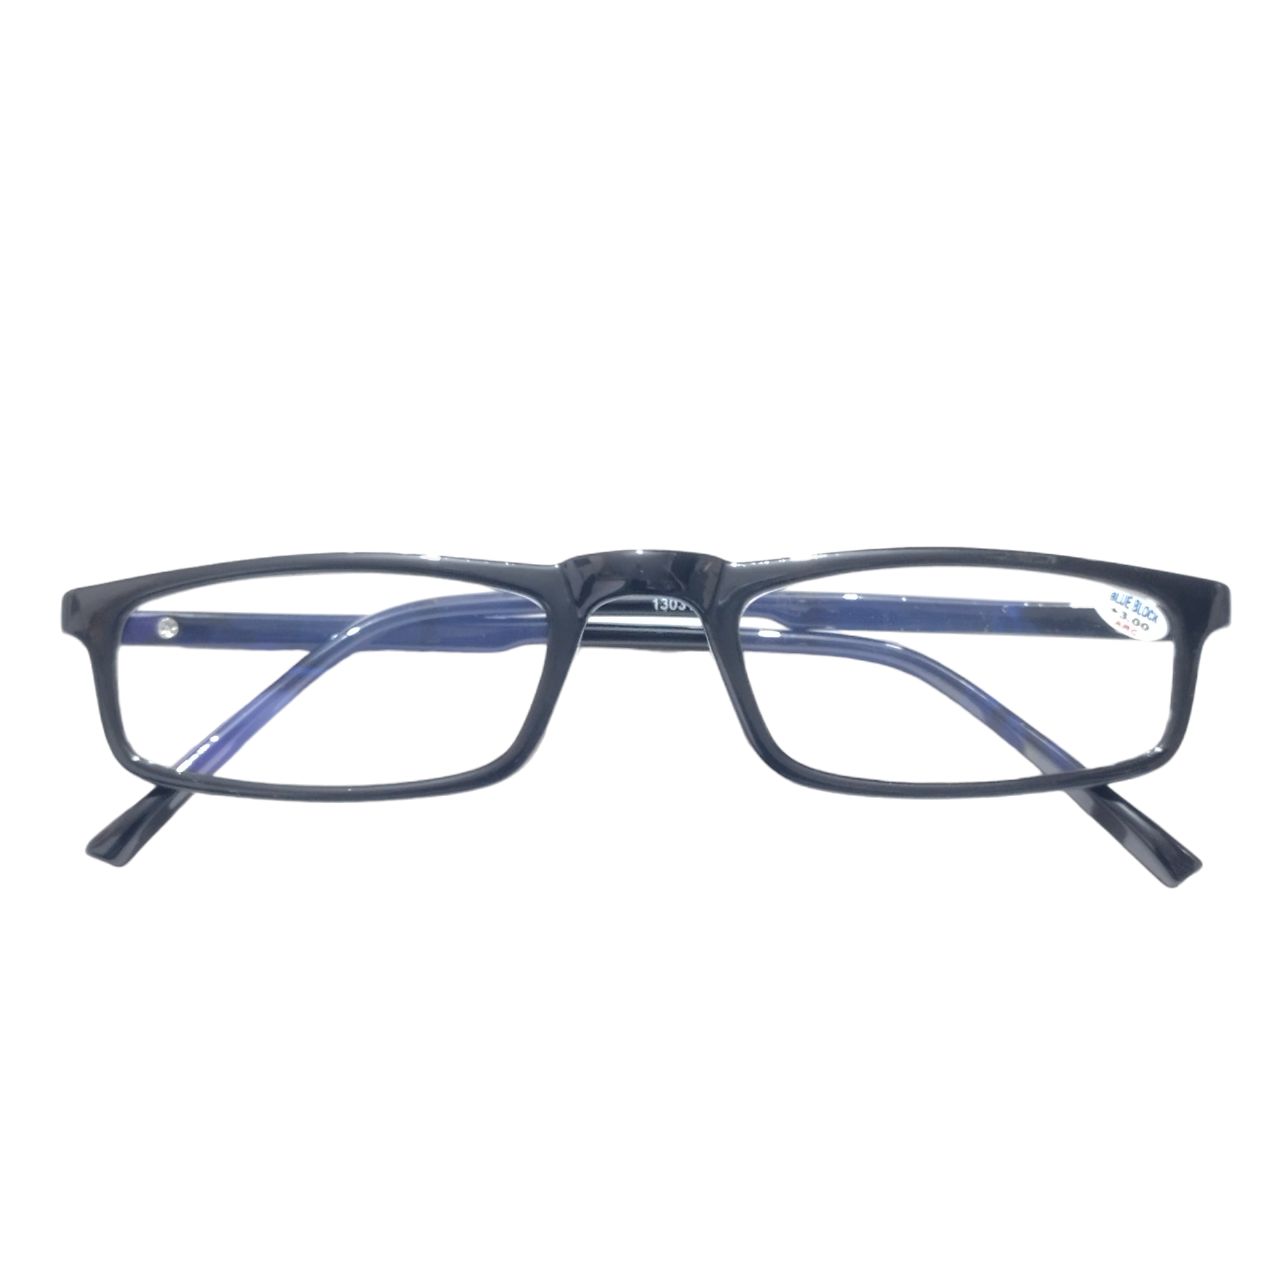 +2.50 Power Reading Glasses with Anti Glare Blue Light Lenses